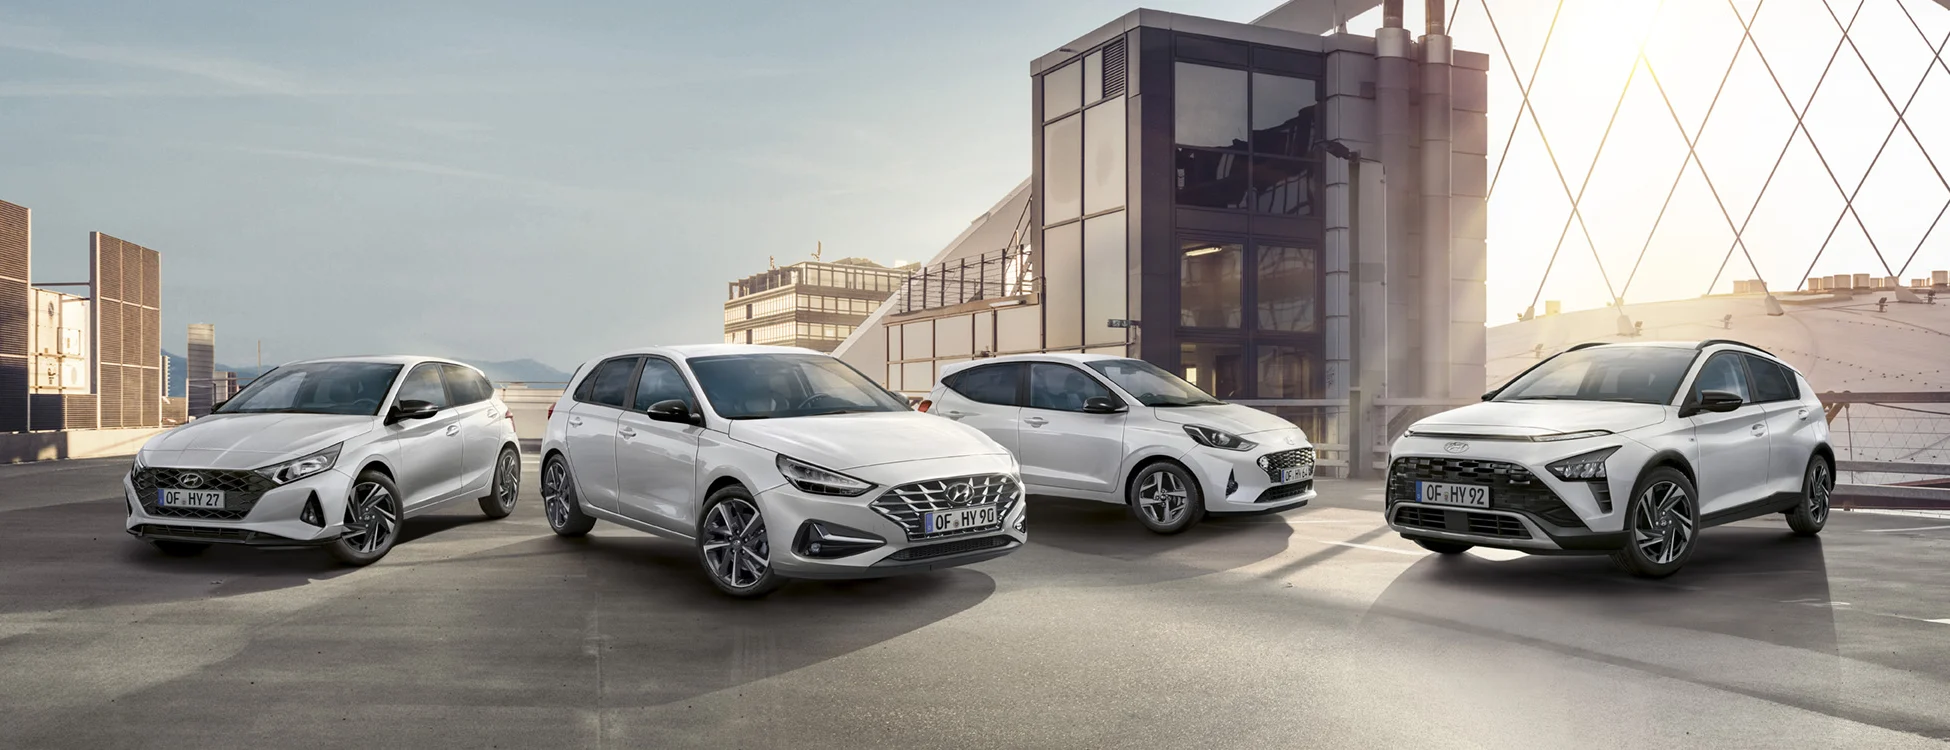 Starten, statt warten - Hyundai Leasing Angebote mit kurzer Lieferzeit